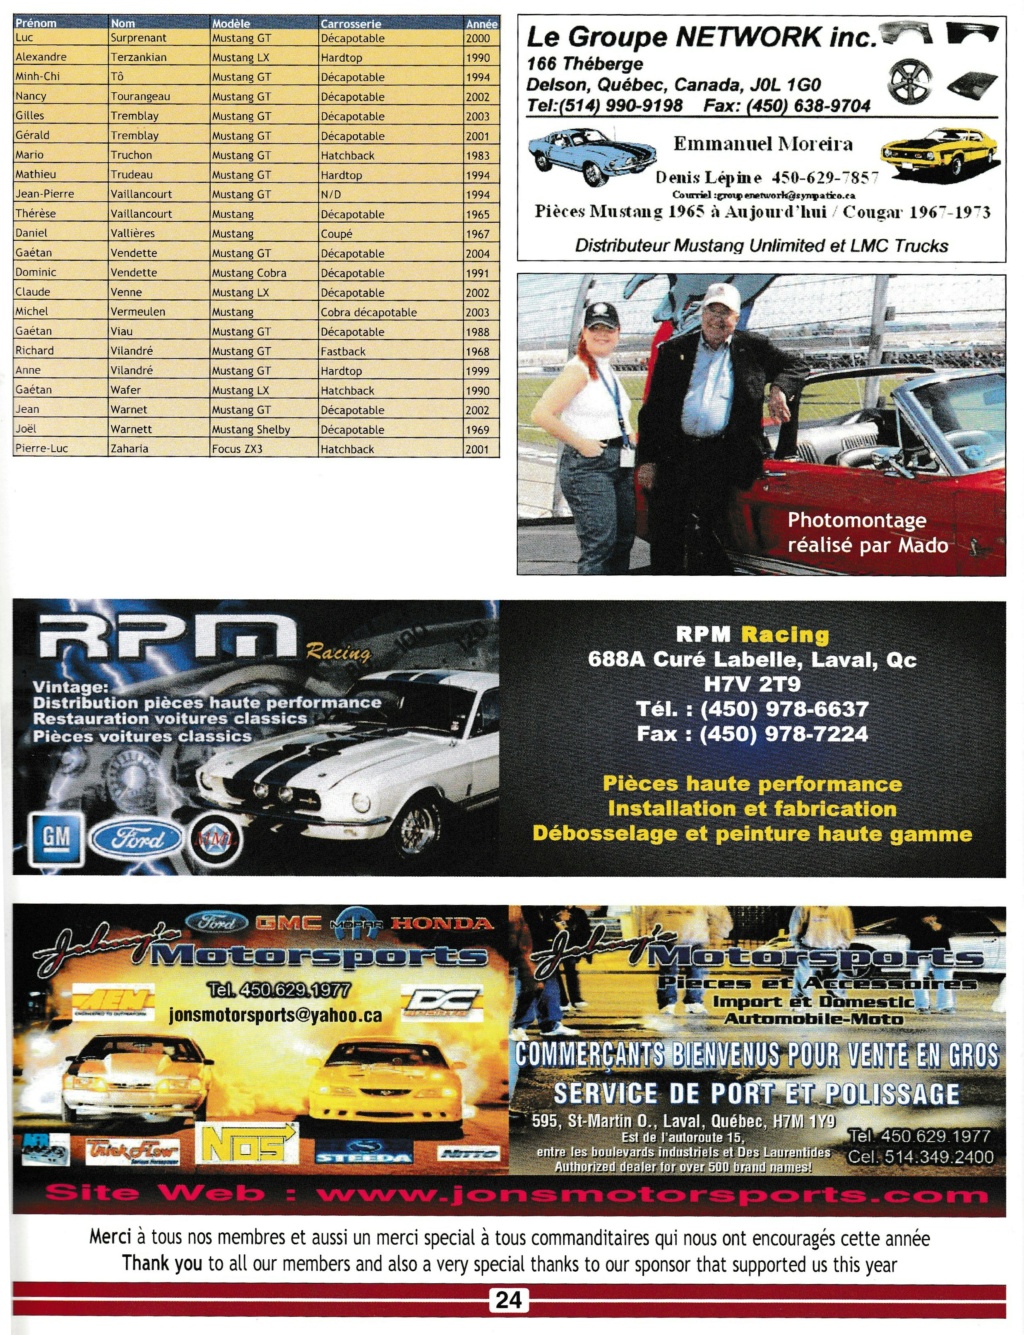 ford - Montréal Mustang: 40 ans et + d’activités! (Photos-Vidéos,etc...) - Page 18 Img_2600